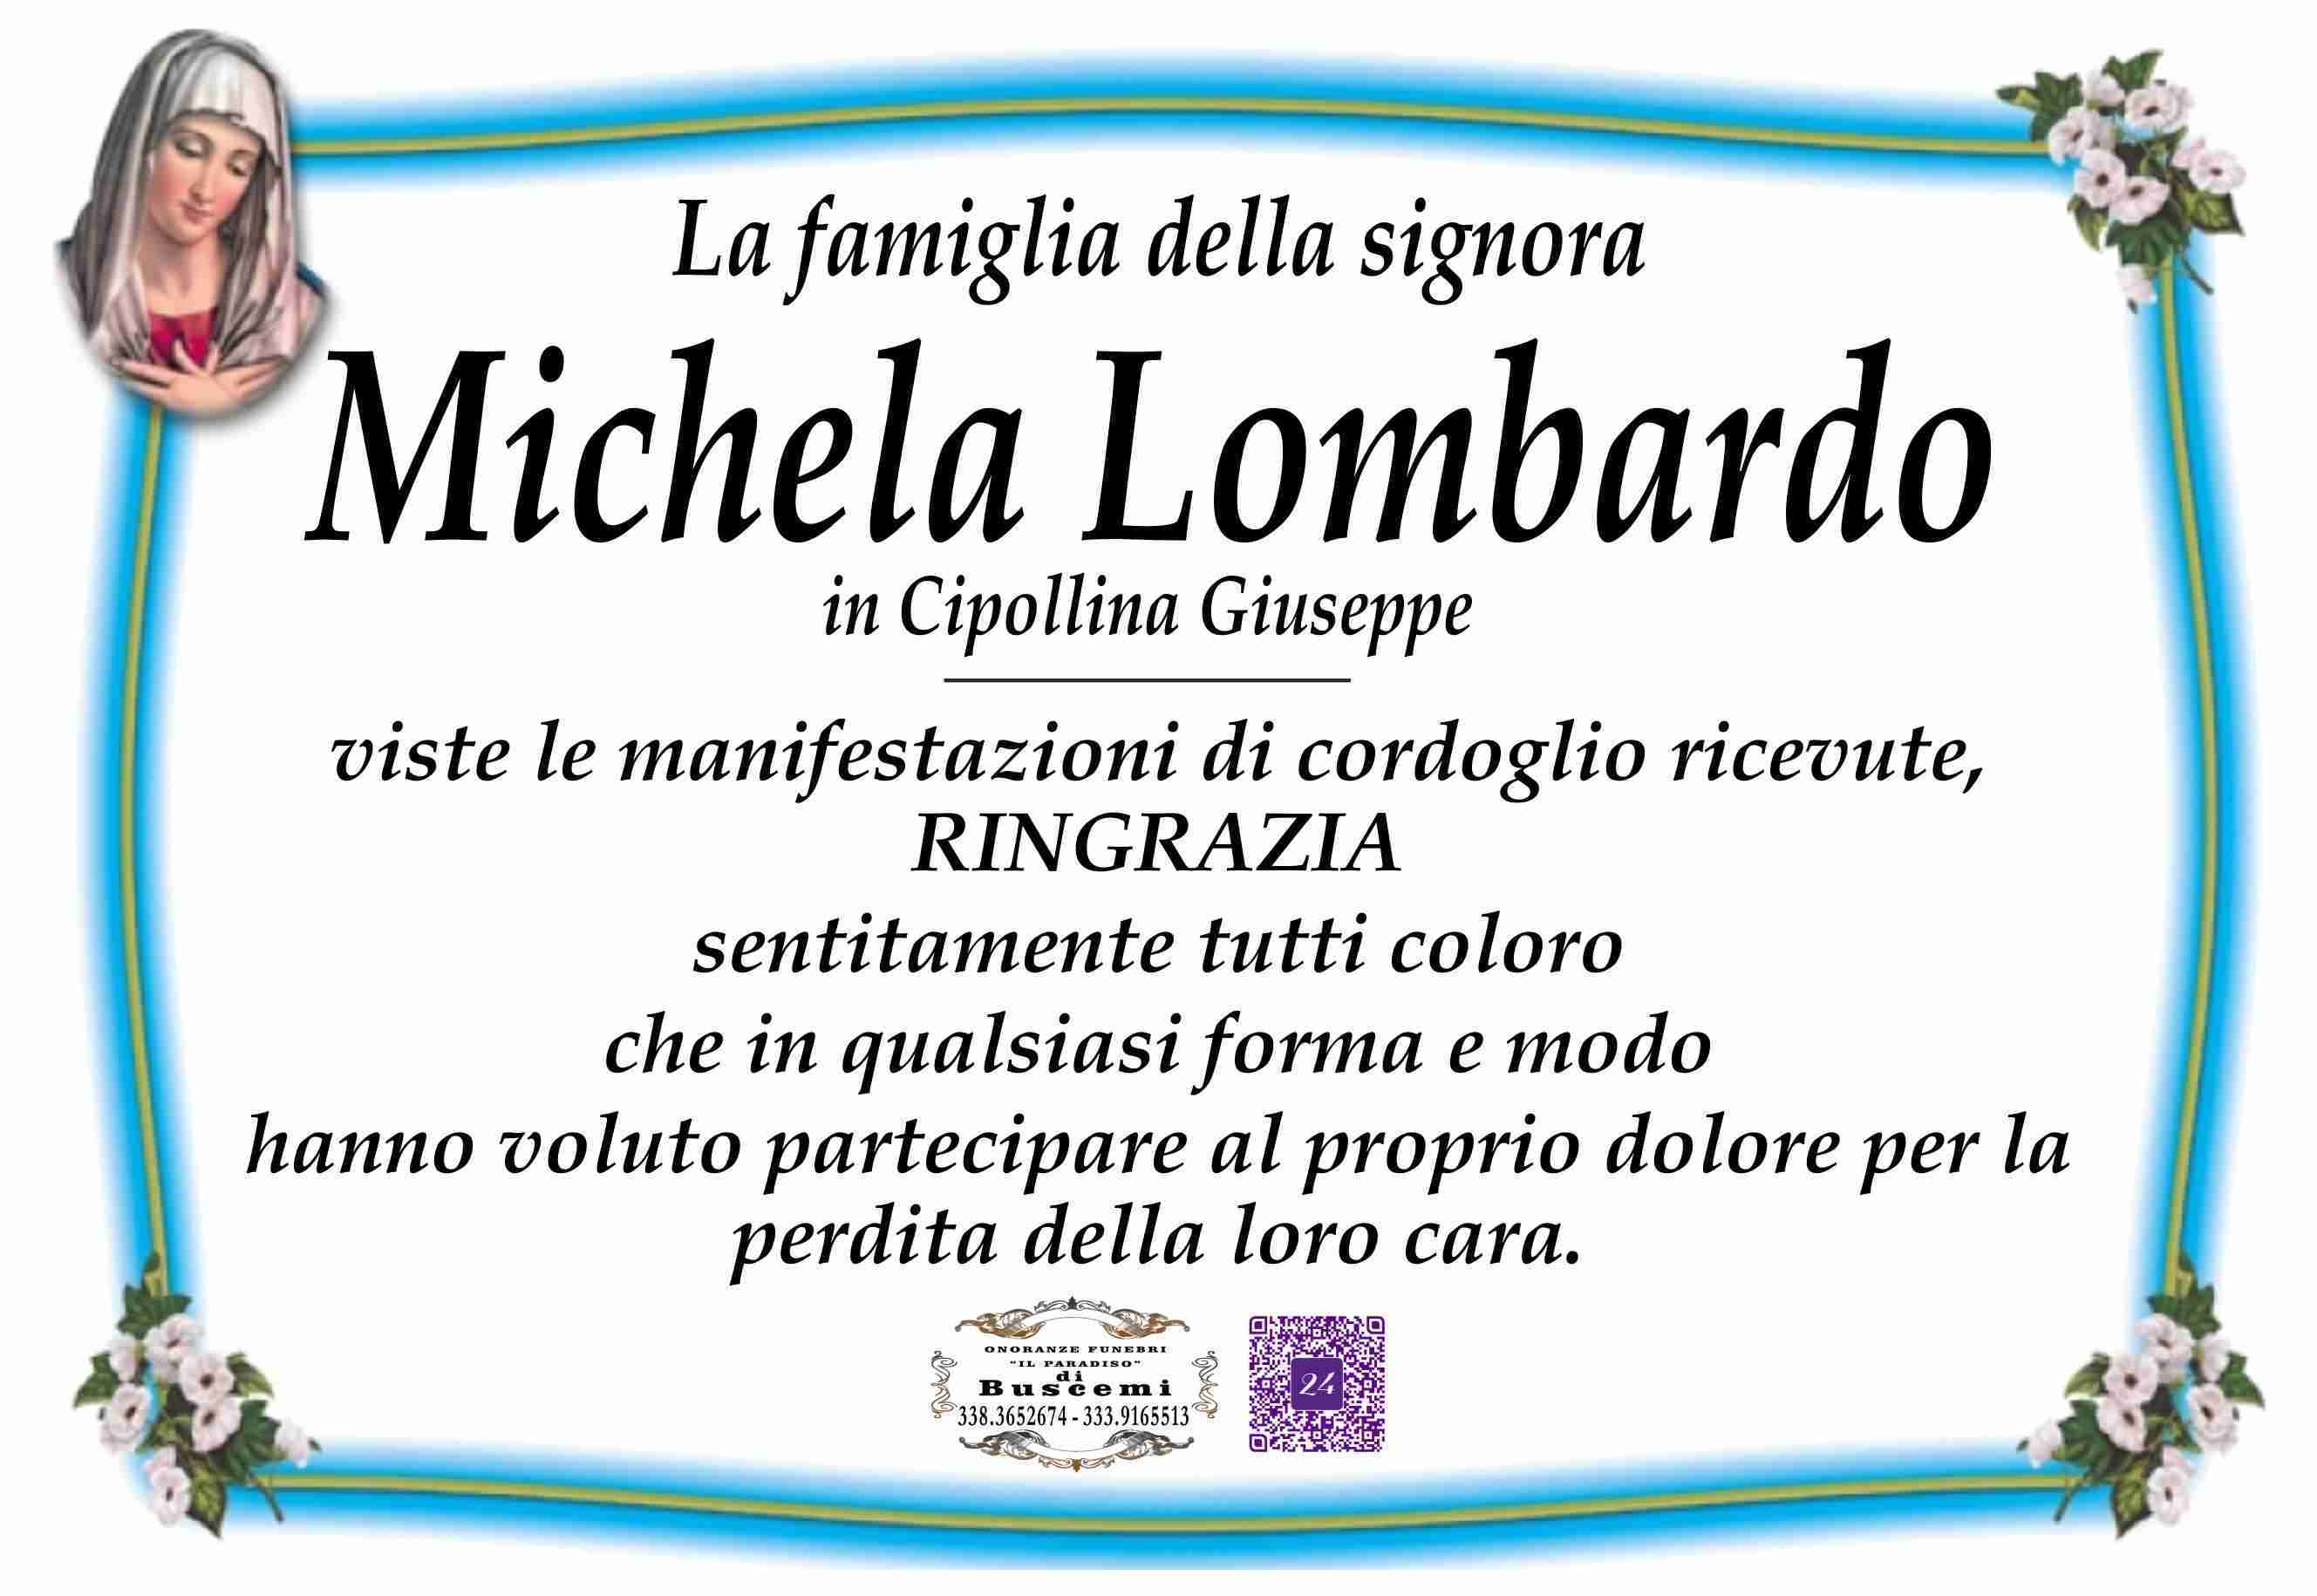 Michela Lombardo